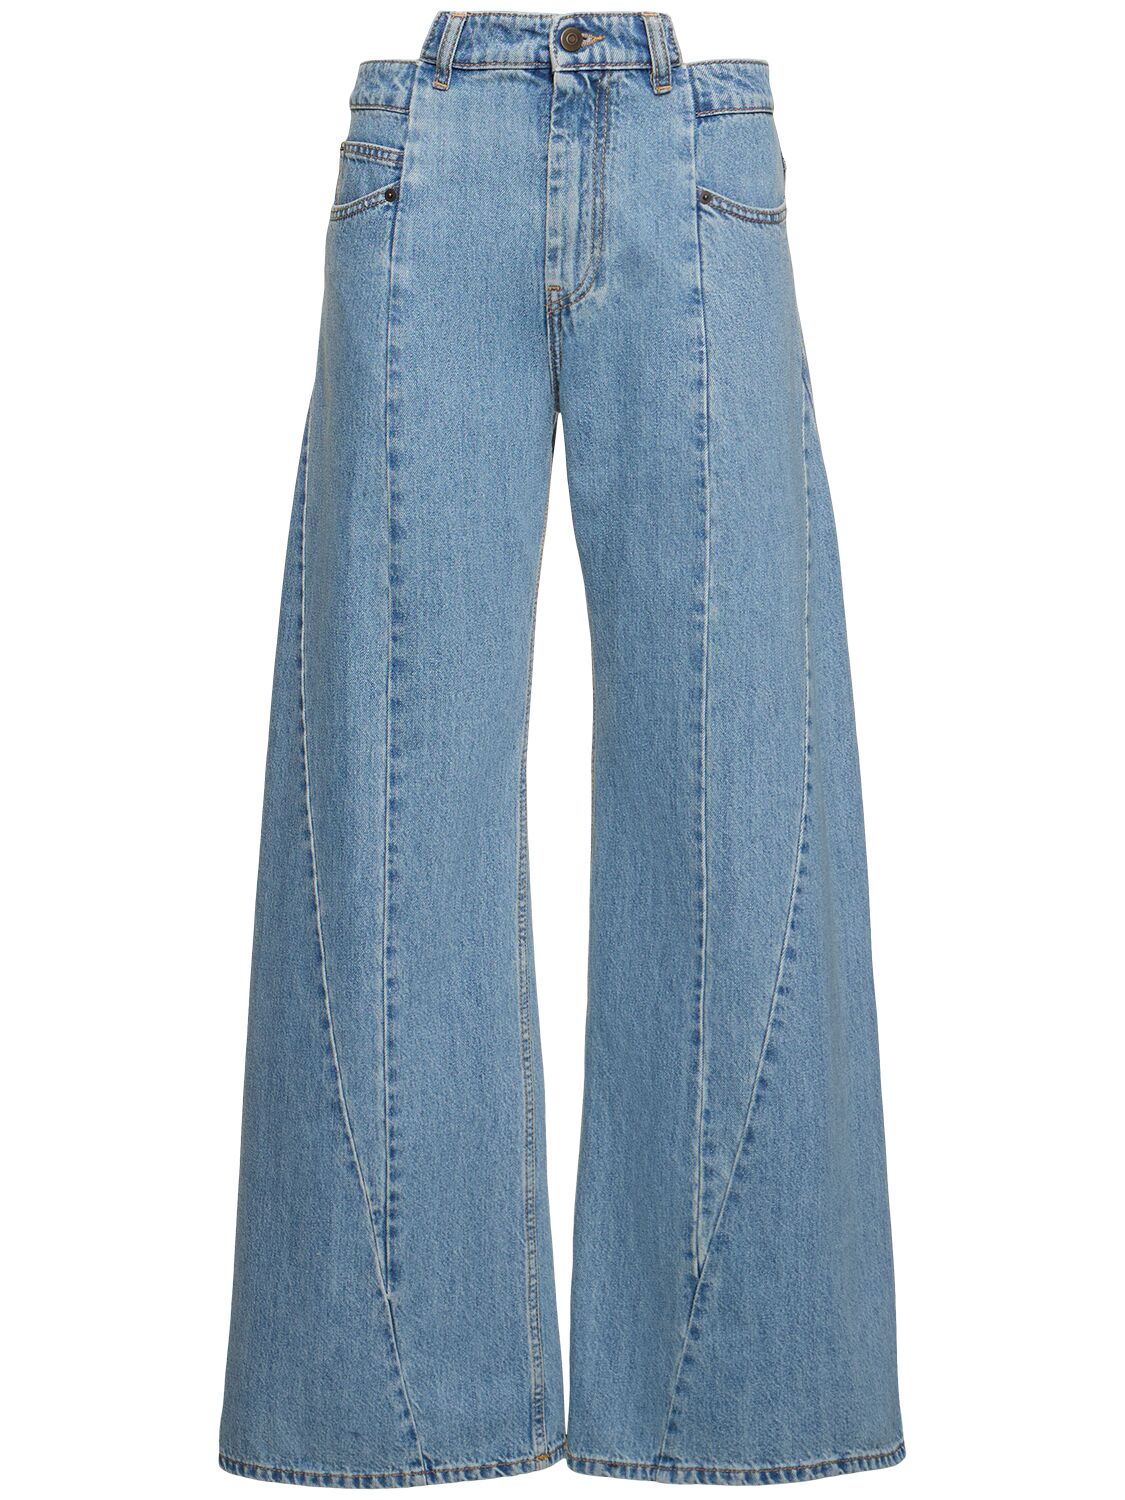 Jeans Aus Baumwolldenim Mit Weitem Bein - MAISON MARGIELA - Modalova